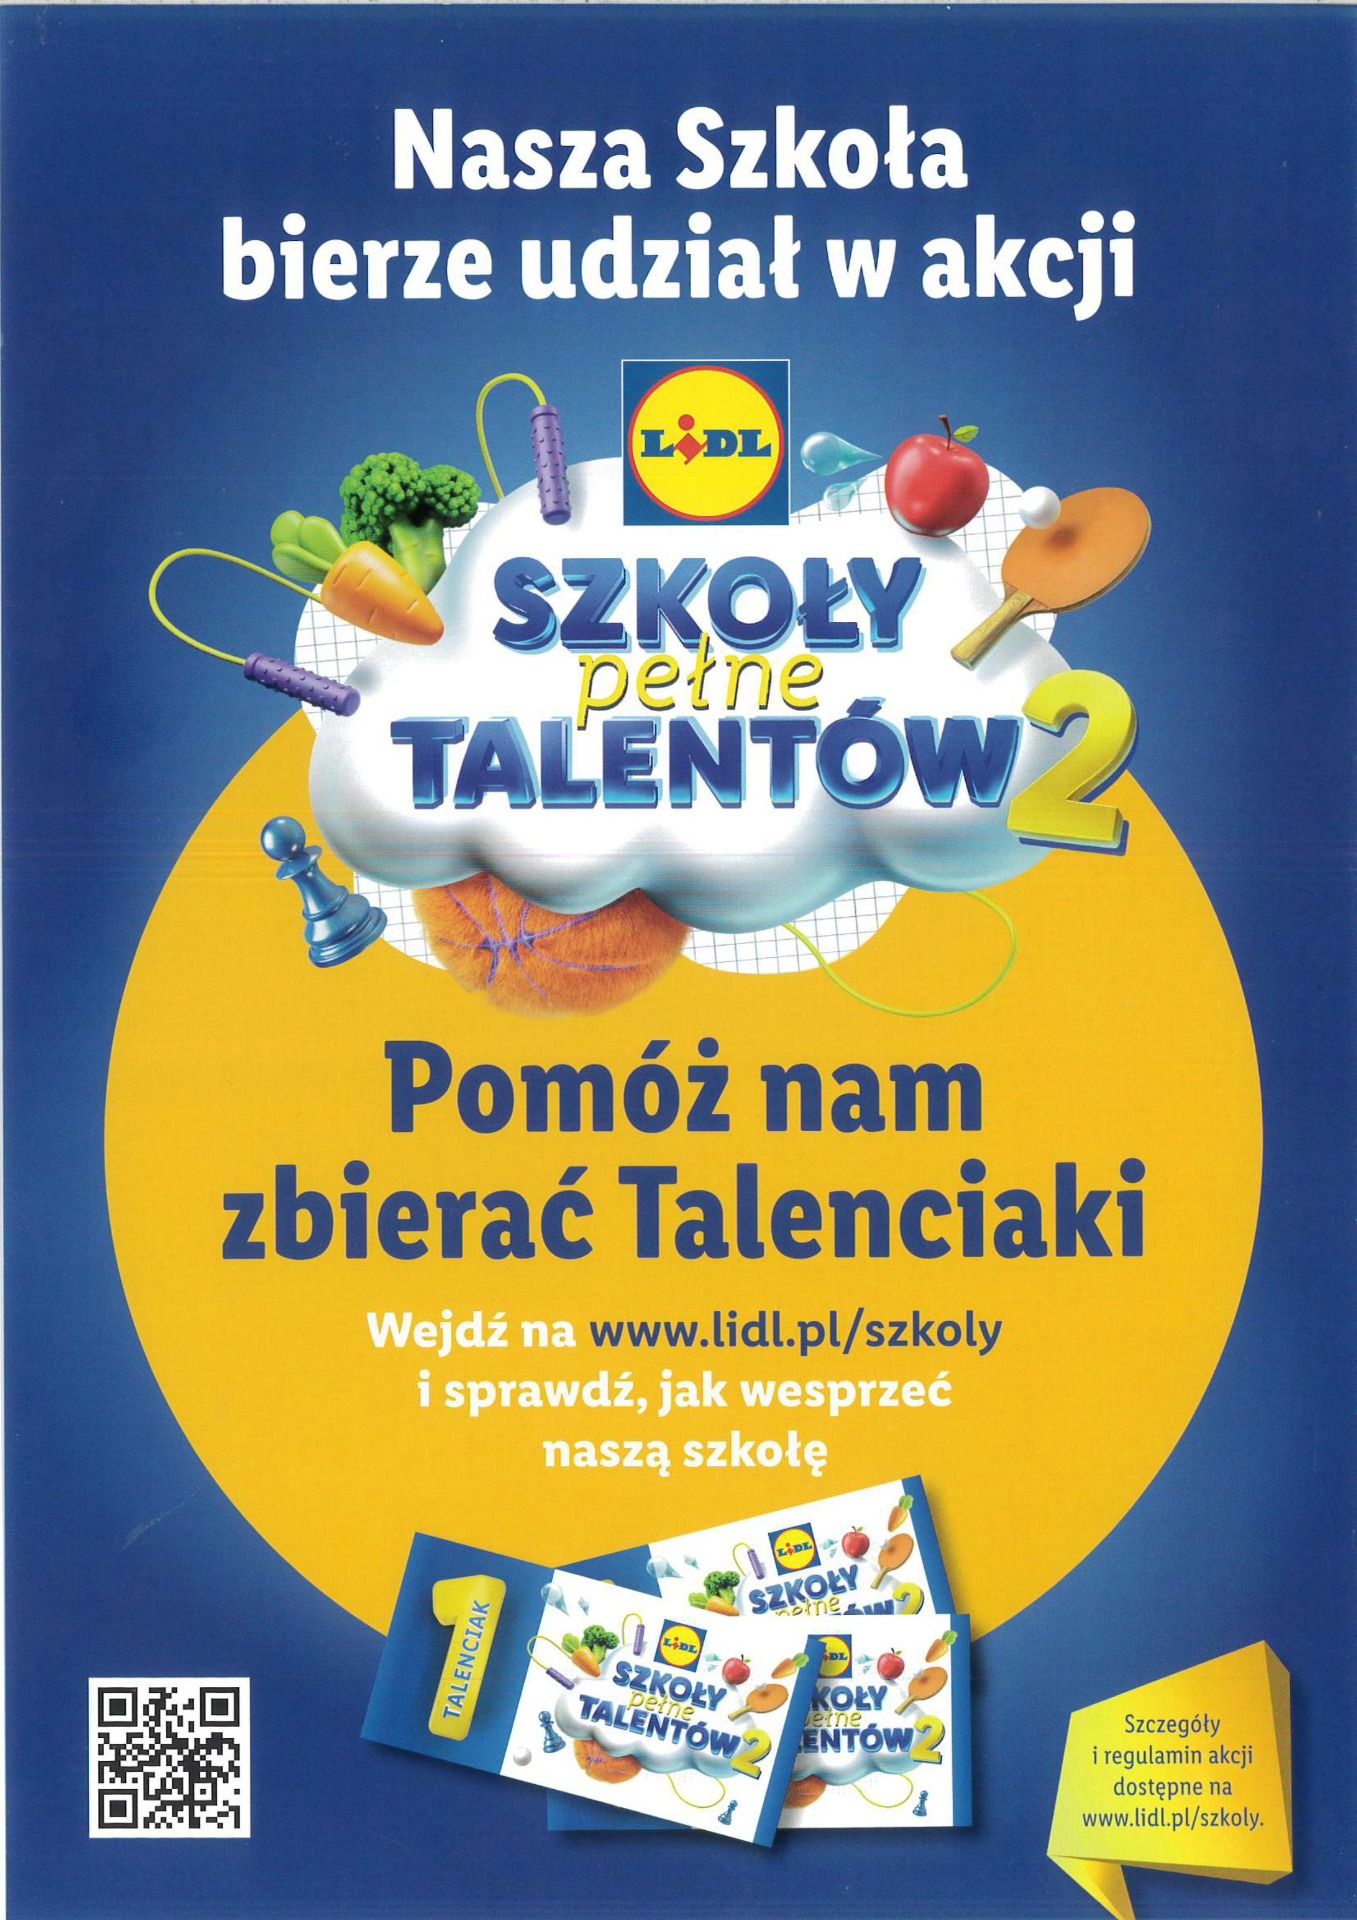 Bierzemy udział w akcji "Szkoły pełne talentów 2"! - Obrazek 1